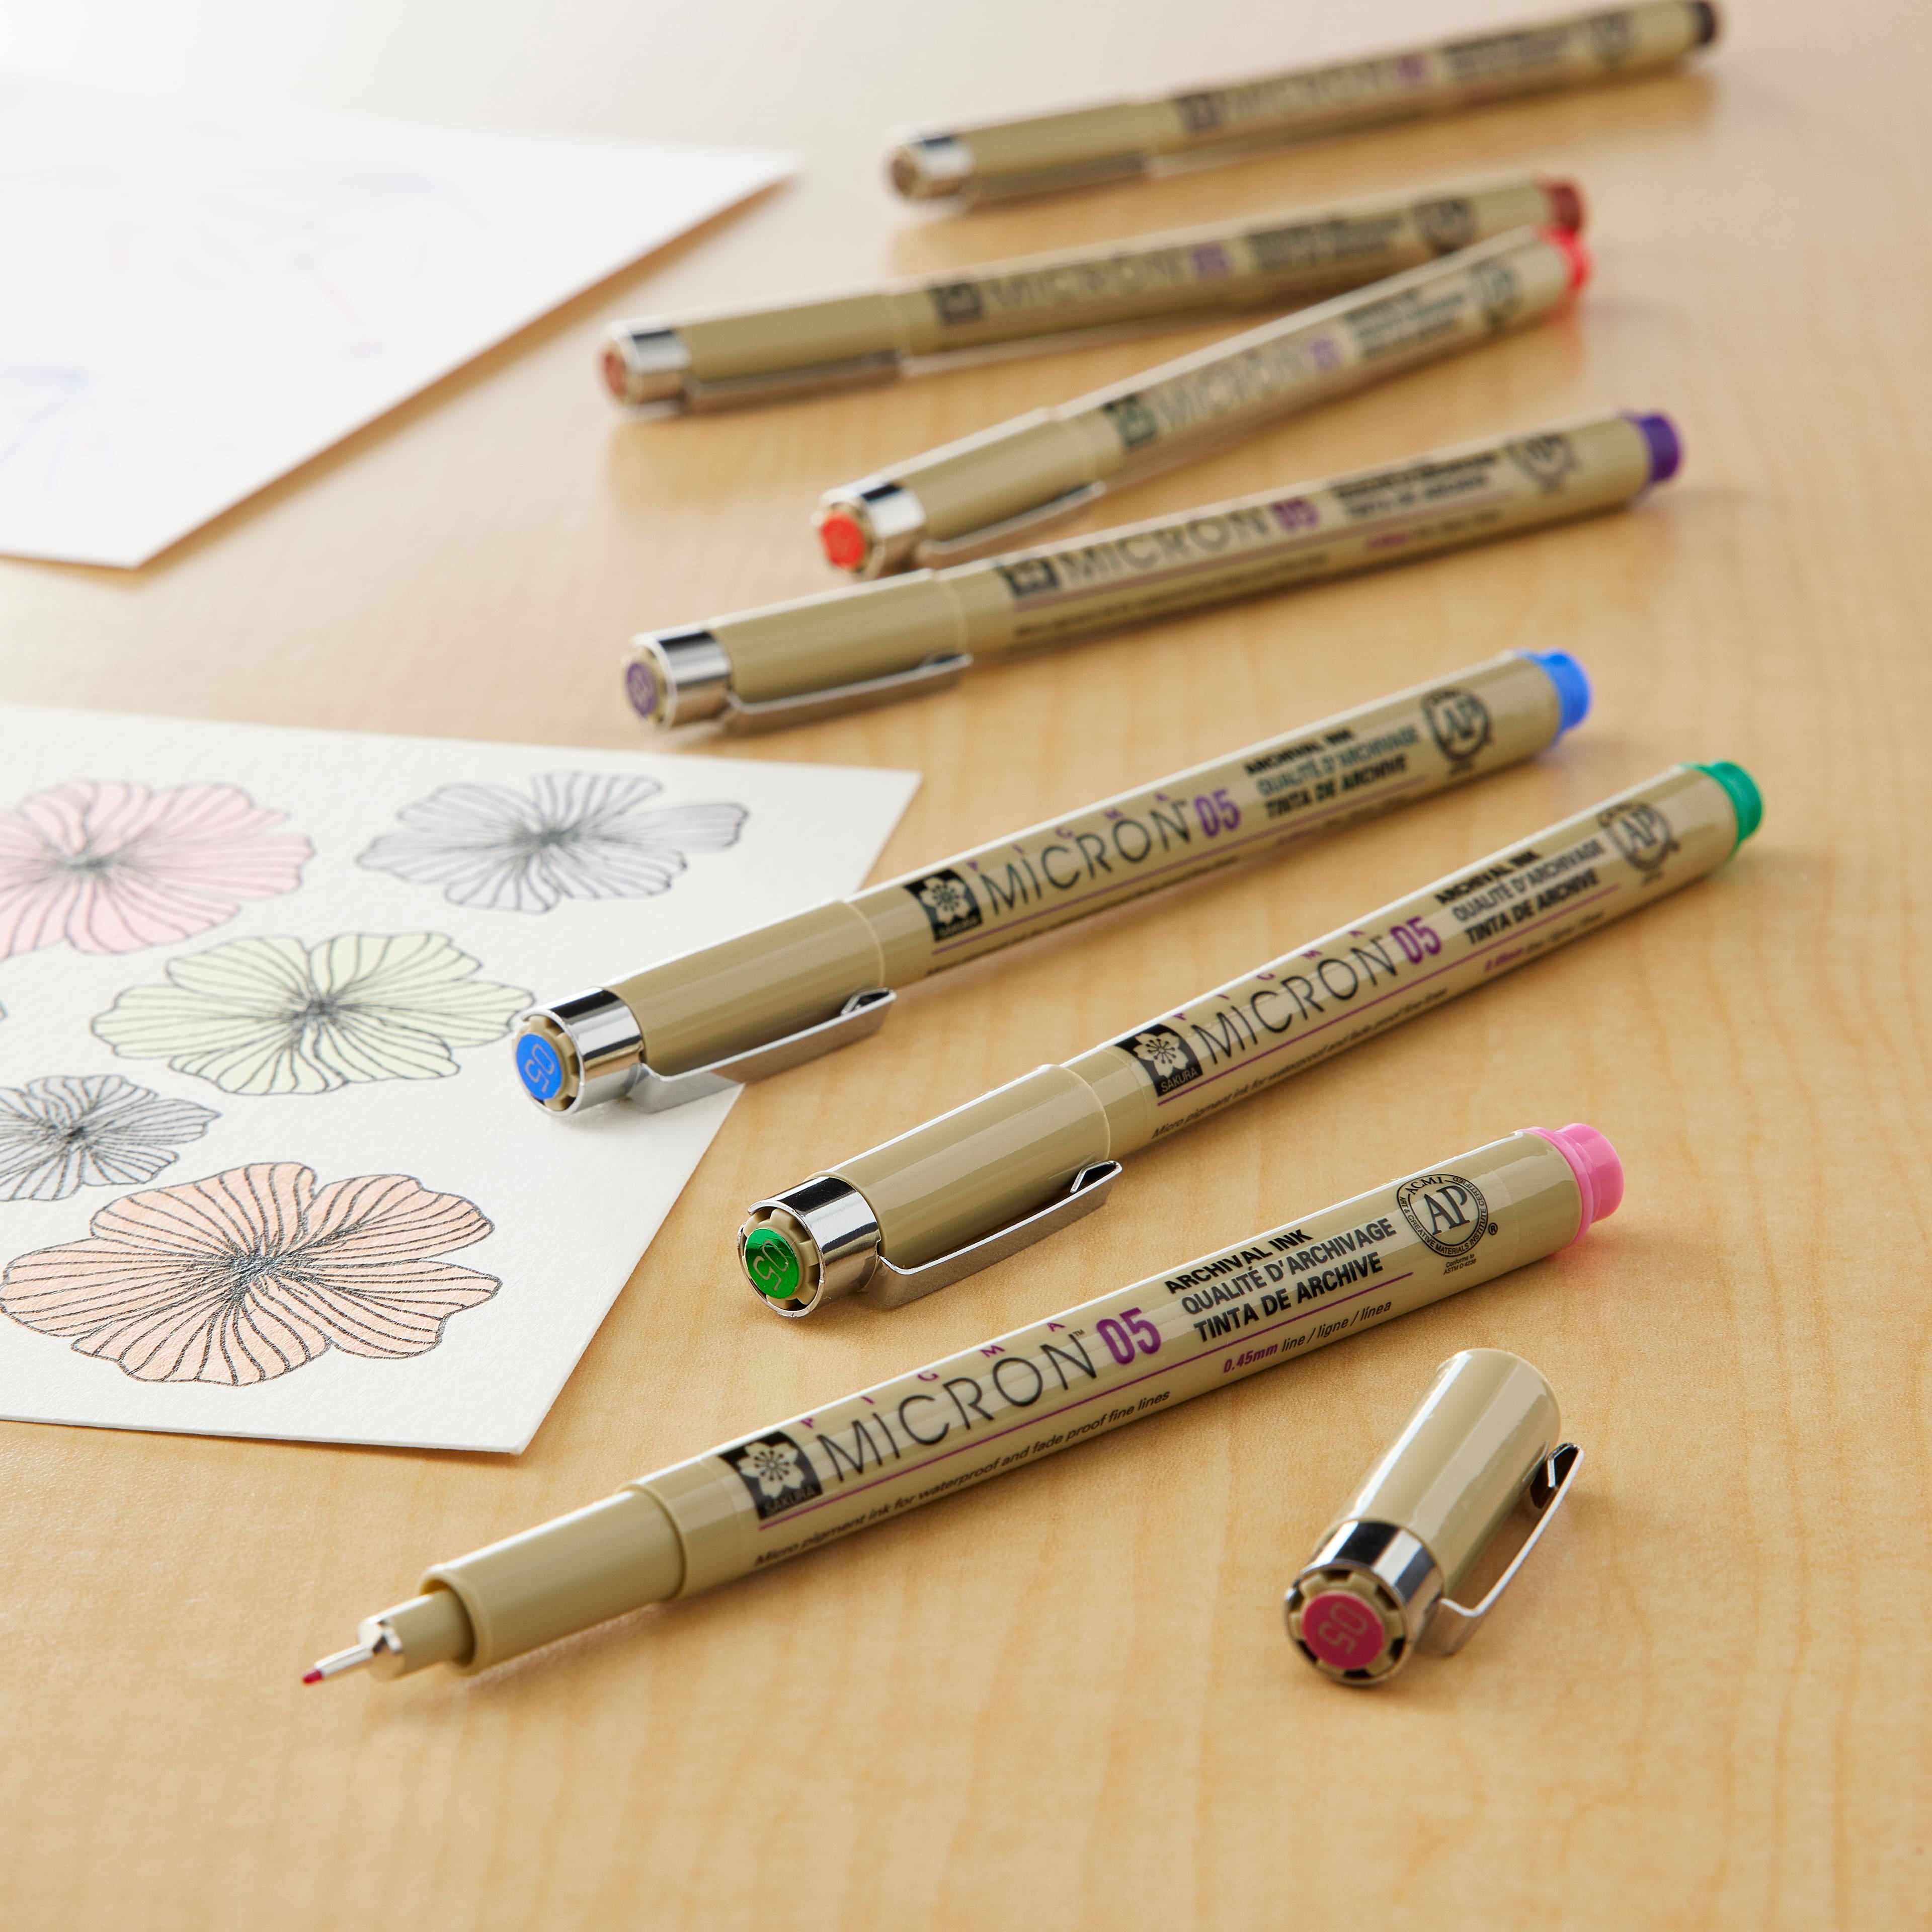 Sakura Pigma Micron PN Set Multi-colour Art Craft Kit Pack of 8 Colour Pens  